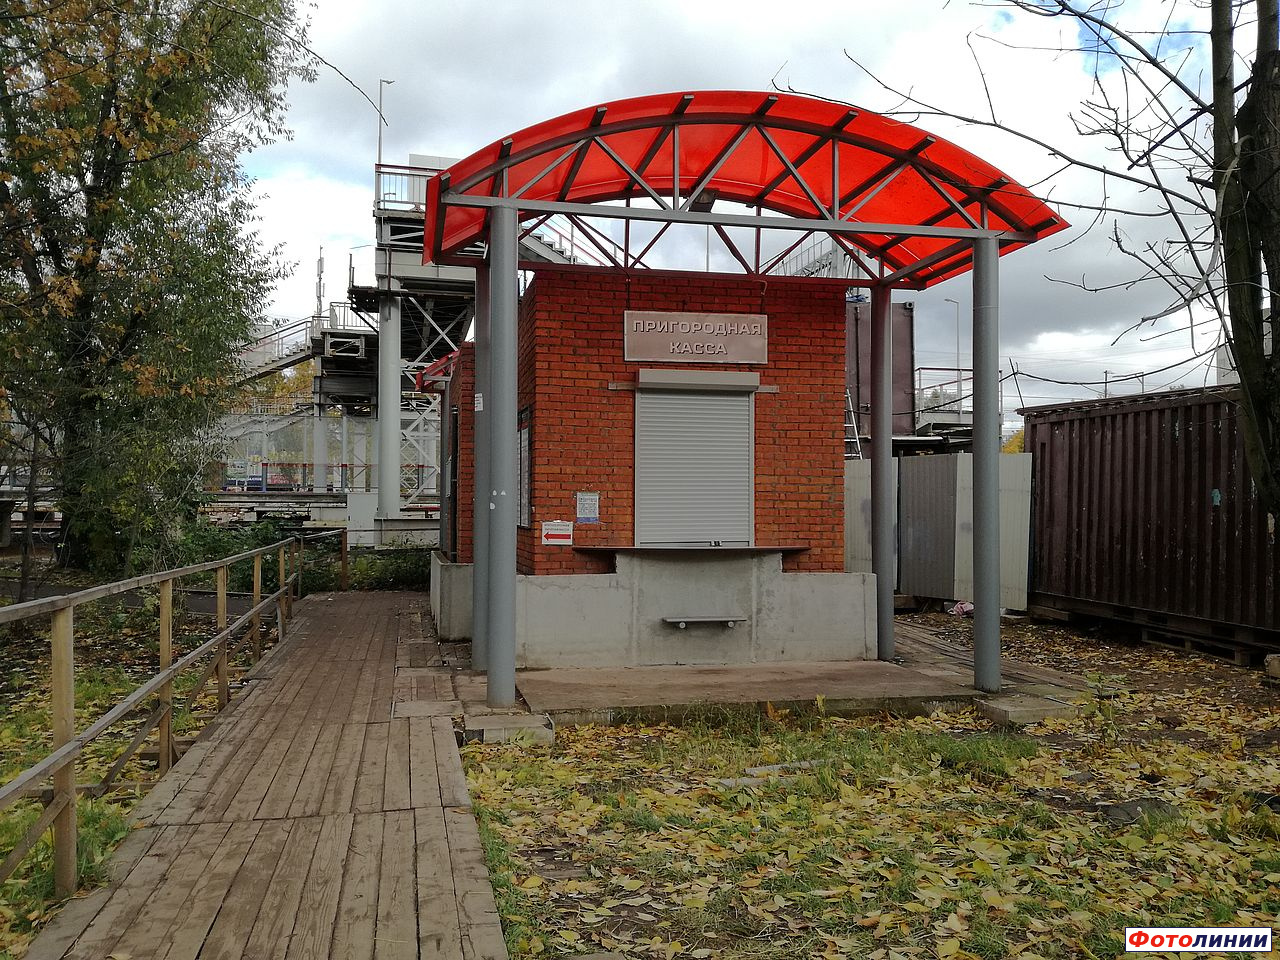 Пригородная касса у новой платформы в сторону Белорусского вокзала